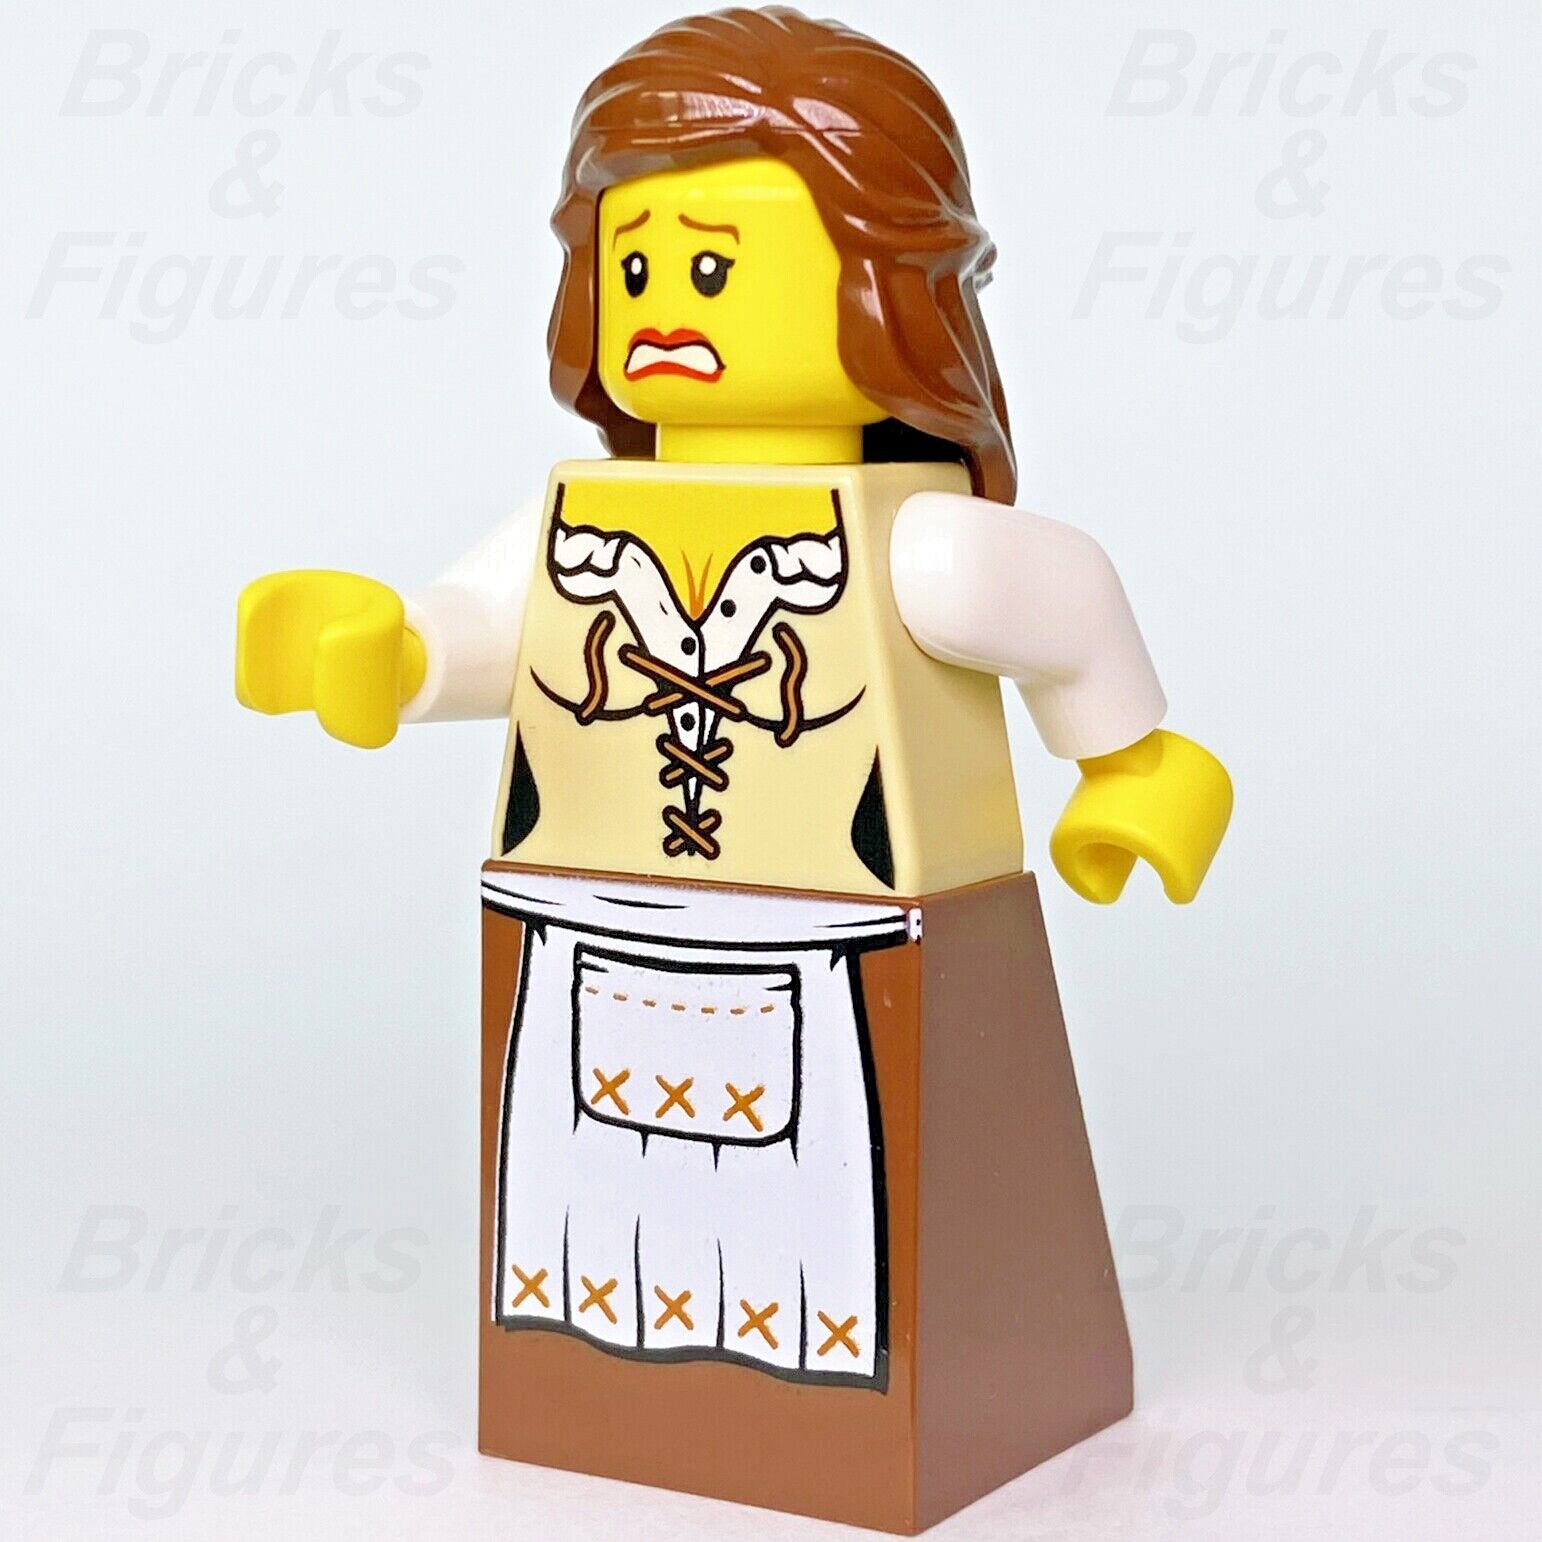 Castle LEGO Maid Fantasy Era Holiday & Event Minifigure 7979 10193 cas404 New - Bricks & Figures